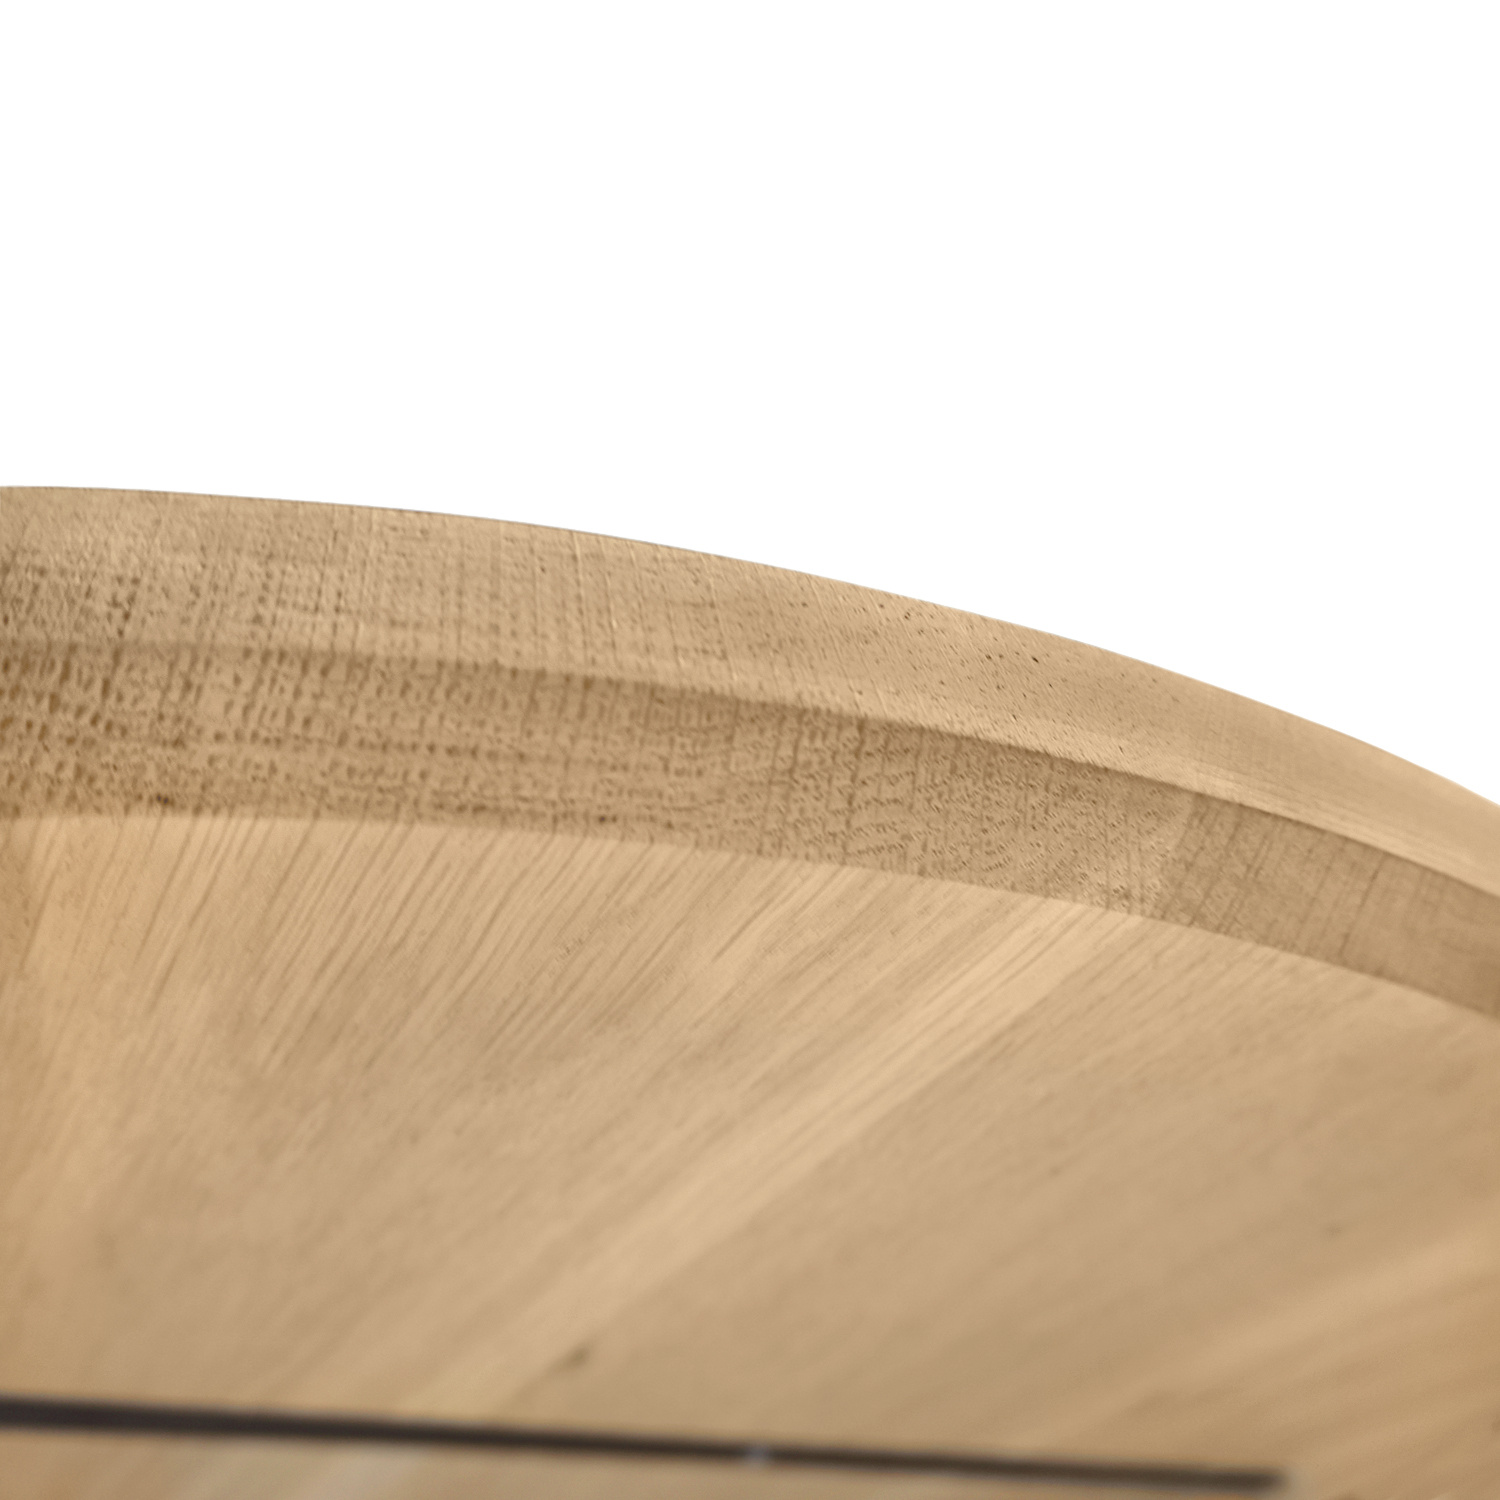  Deens ovaal eiken tafelblad - 4 cm dik (1-laag) - Diverse afmetingen - extra rustiek Europees eikenhout - met extra brede lamellen (circa 14-20 cm) - verlijmd kd 8-12%